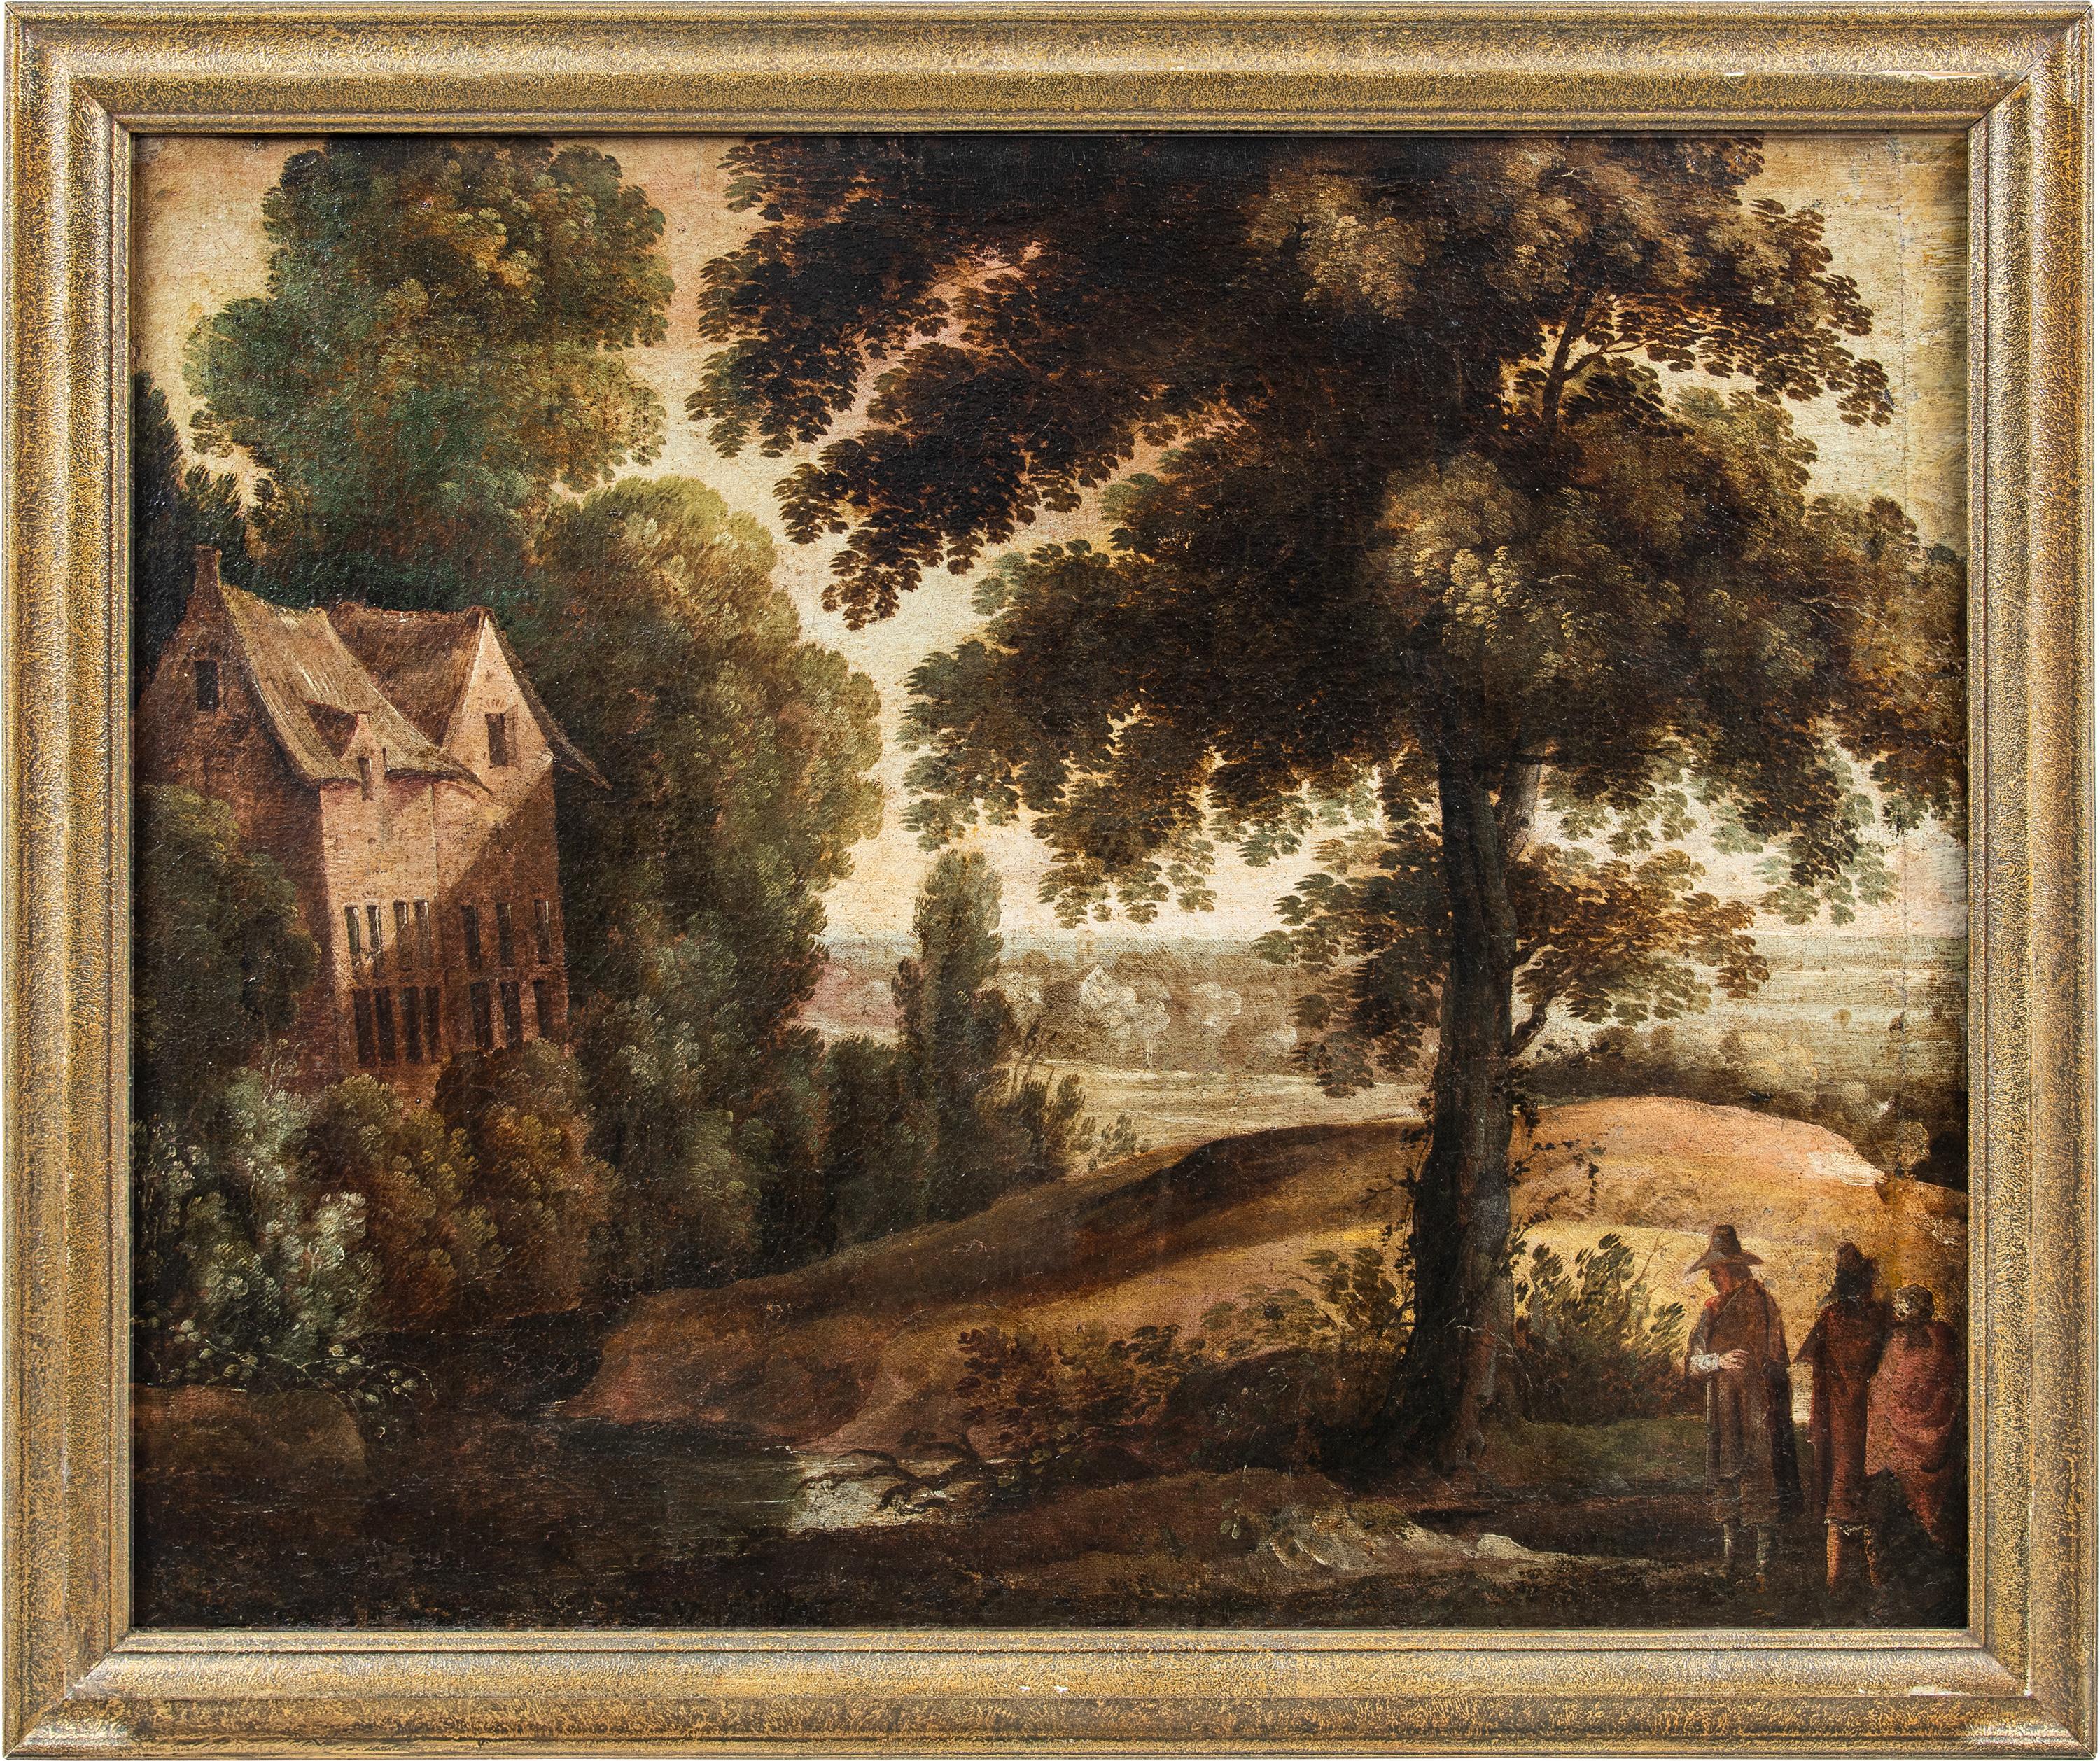 Unknown Landscape Painting – Flämischer Barockmaler - Landschaftsmalerei des 17. Jahrhunderts - Paul Bril